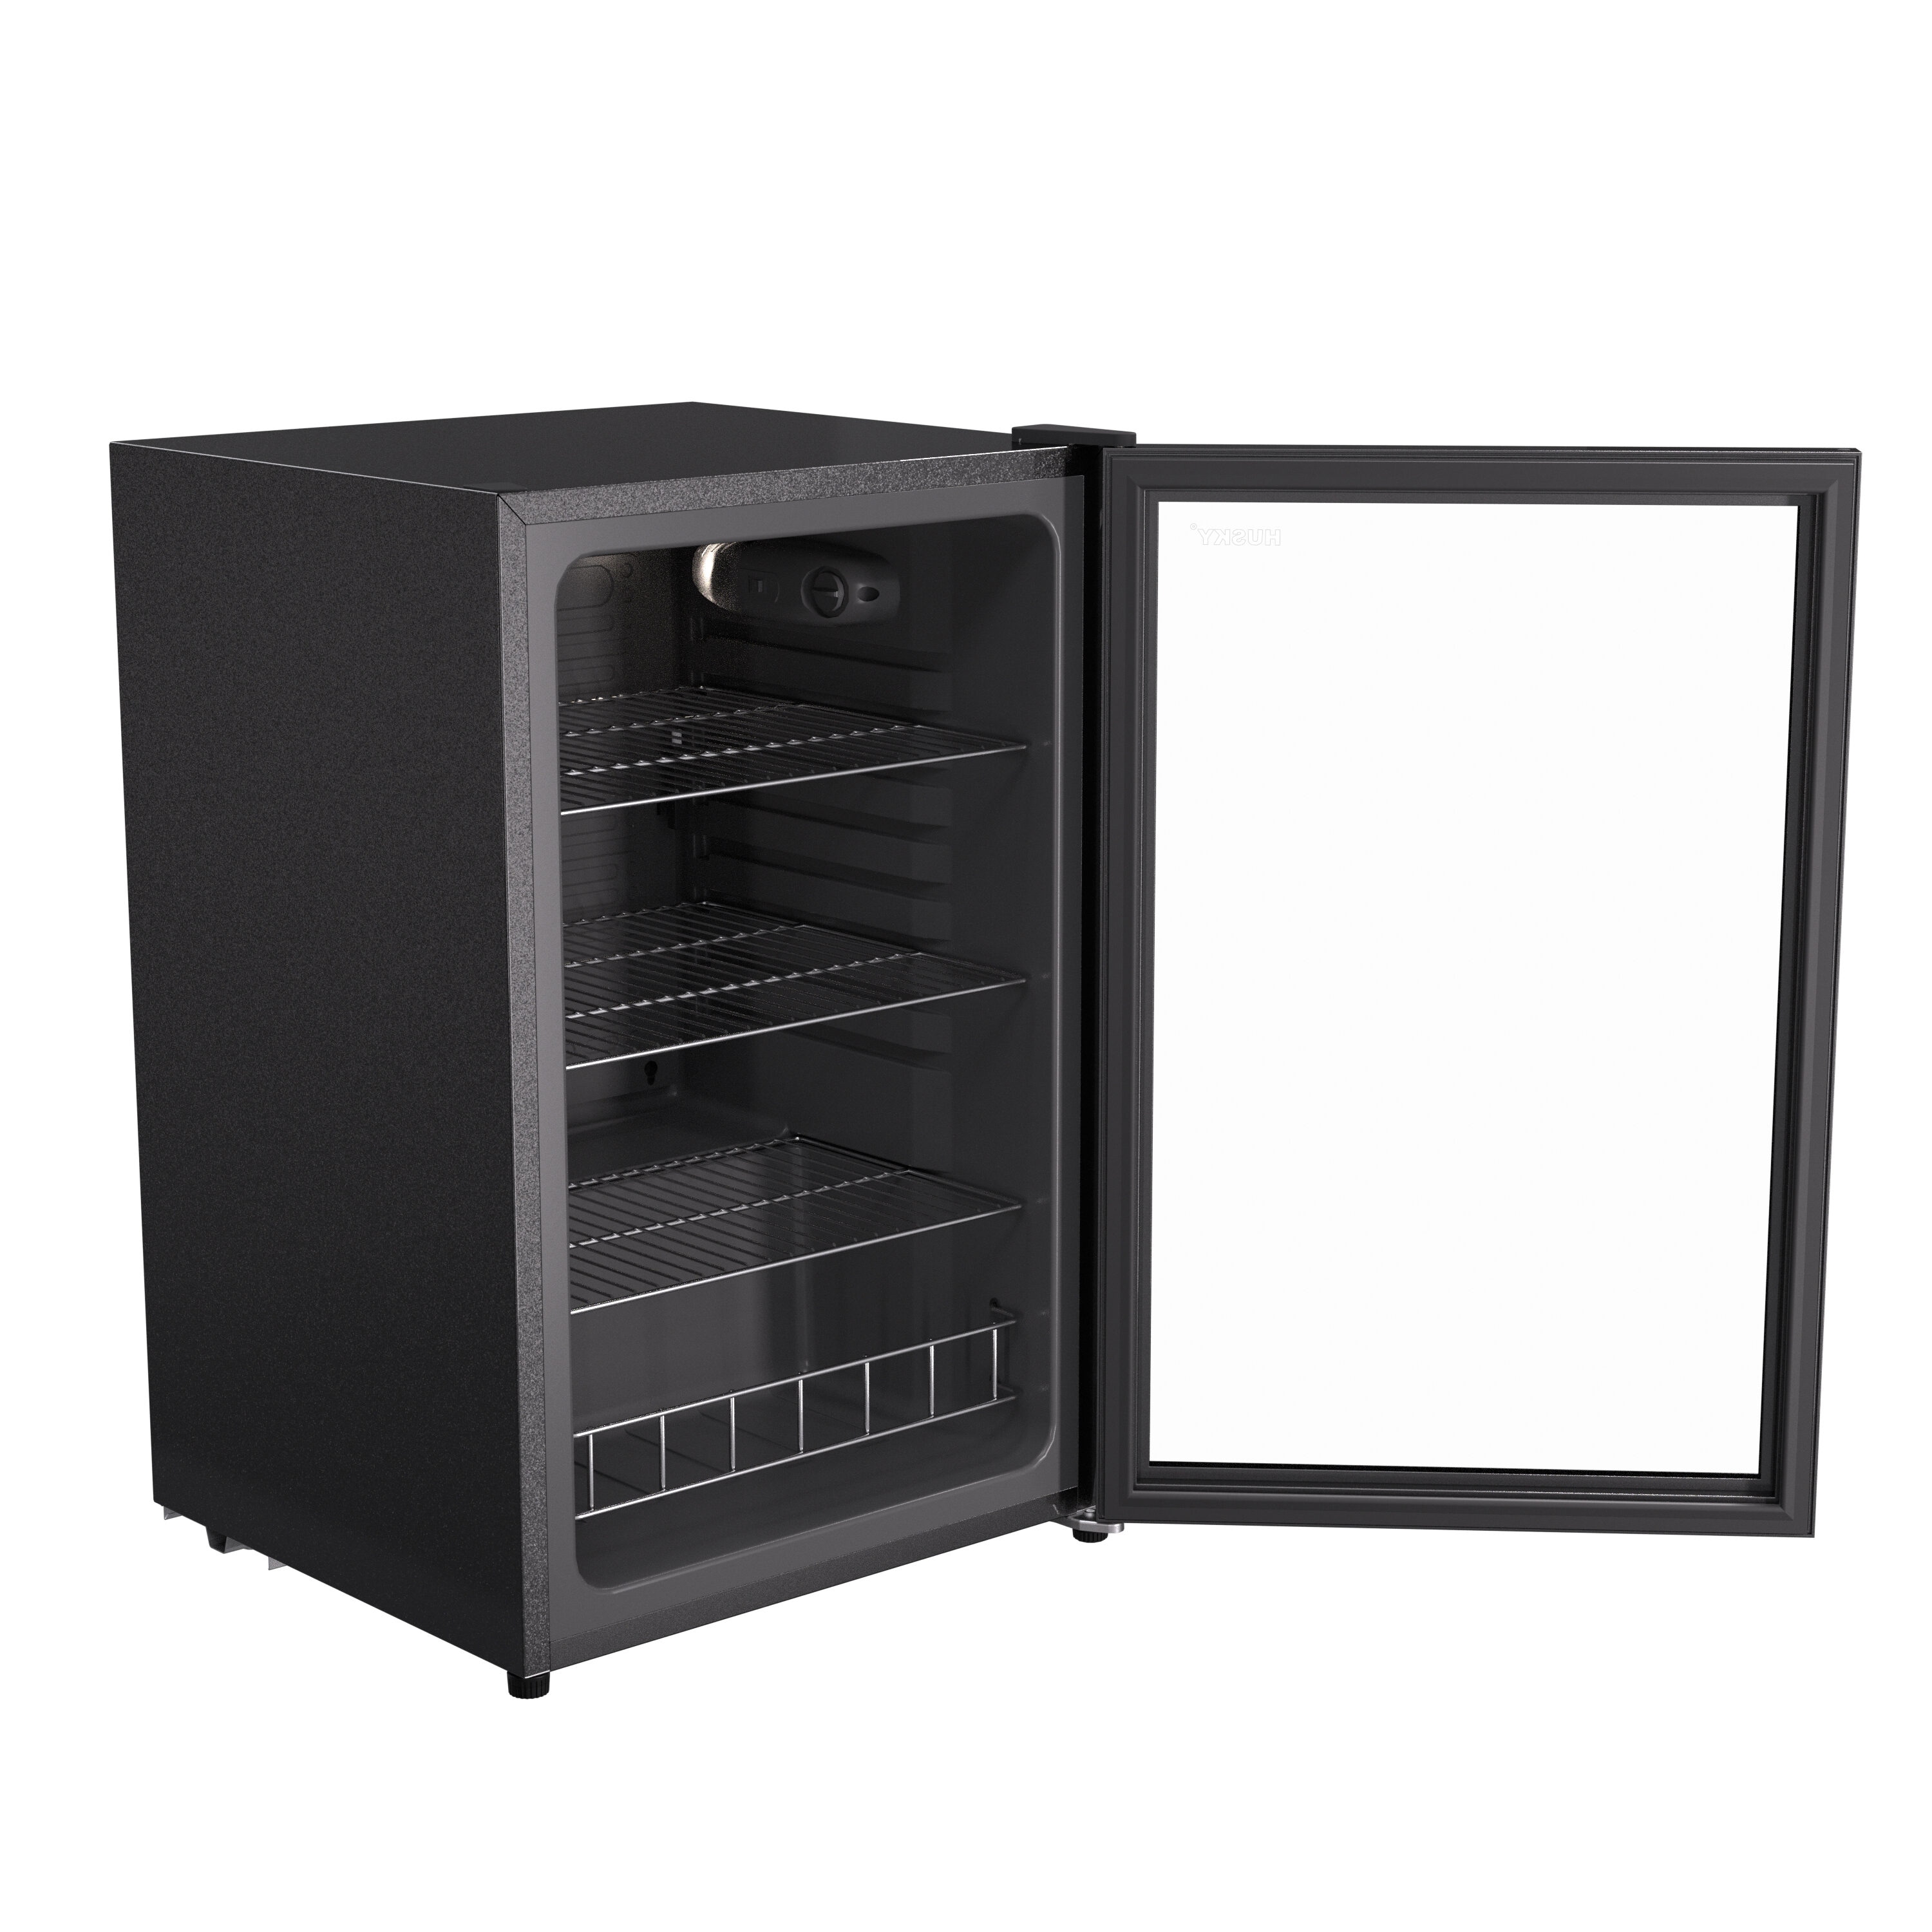 Black+decker BCRK32V 3.2 Cu ft Compact Refrigerator with Freezer, Silver VCM